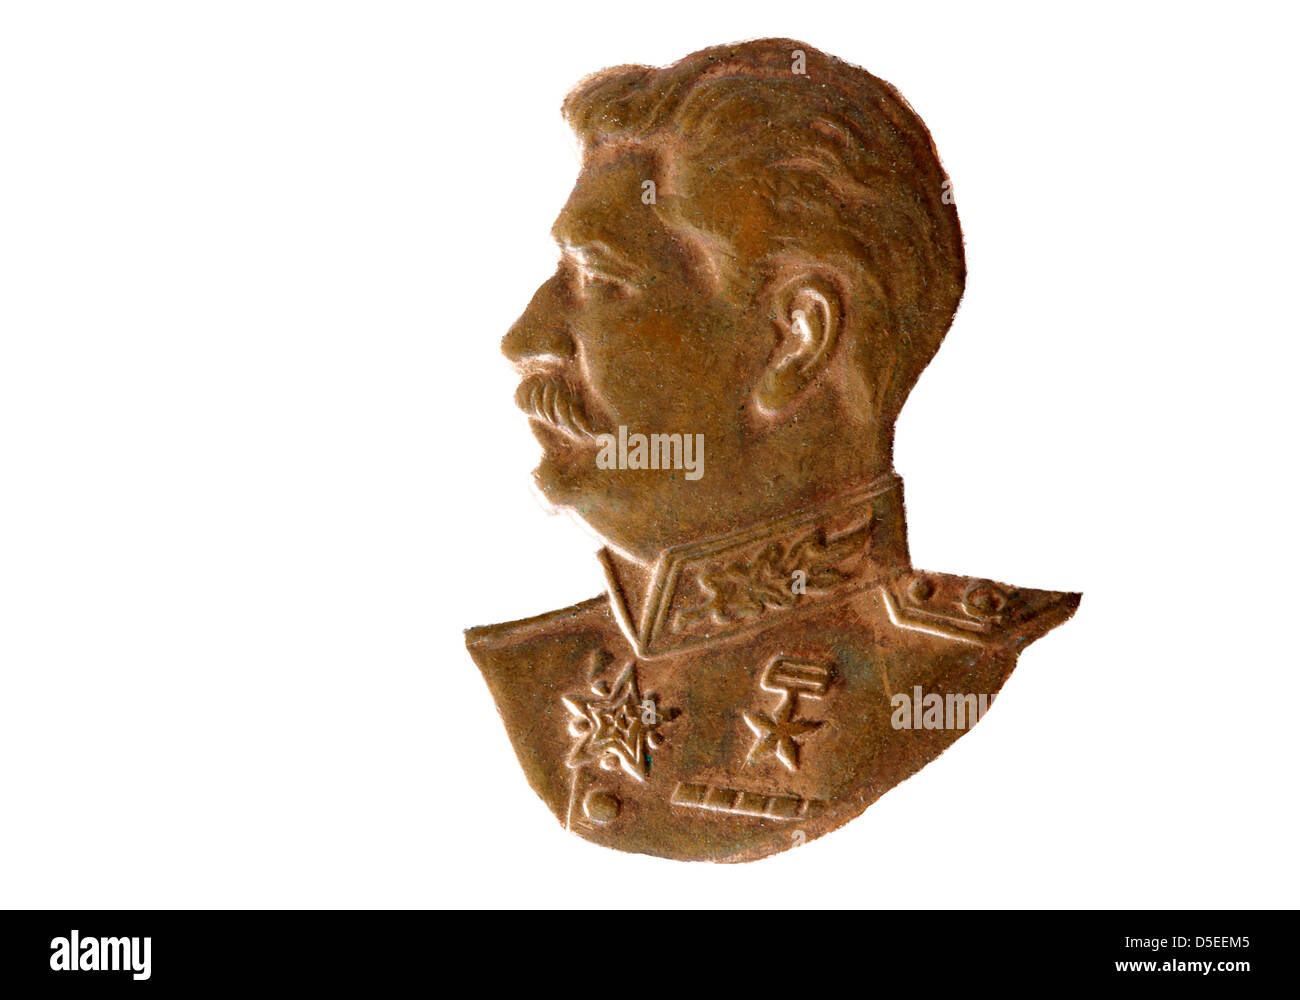 Portrait de Joseph Staline de médaille soviétique pour le travail courageux, Russie, 1945, sur fond blanc Banque D'Images